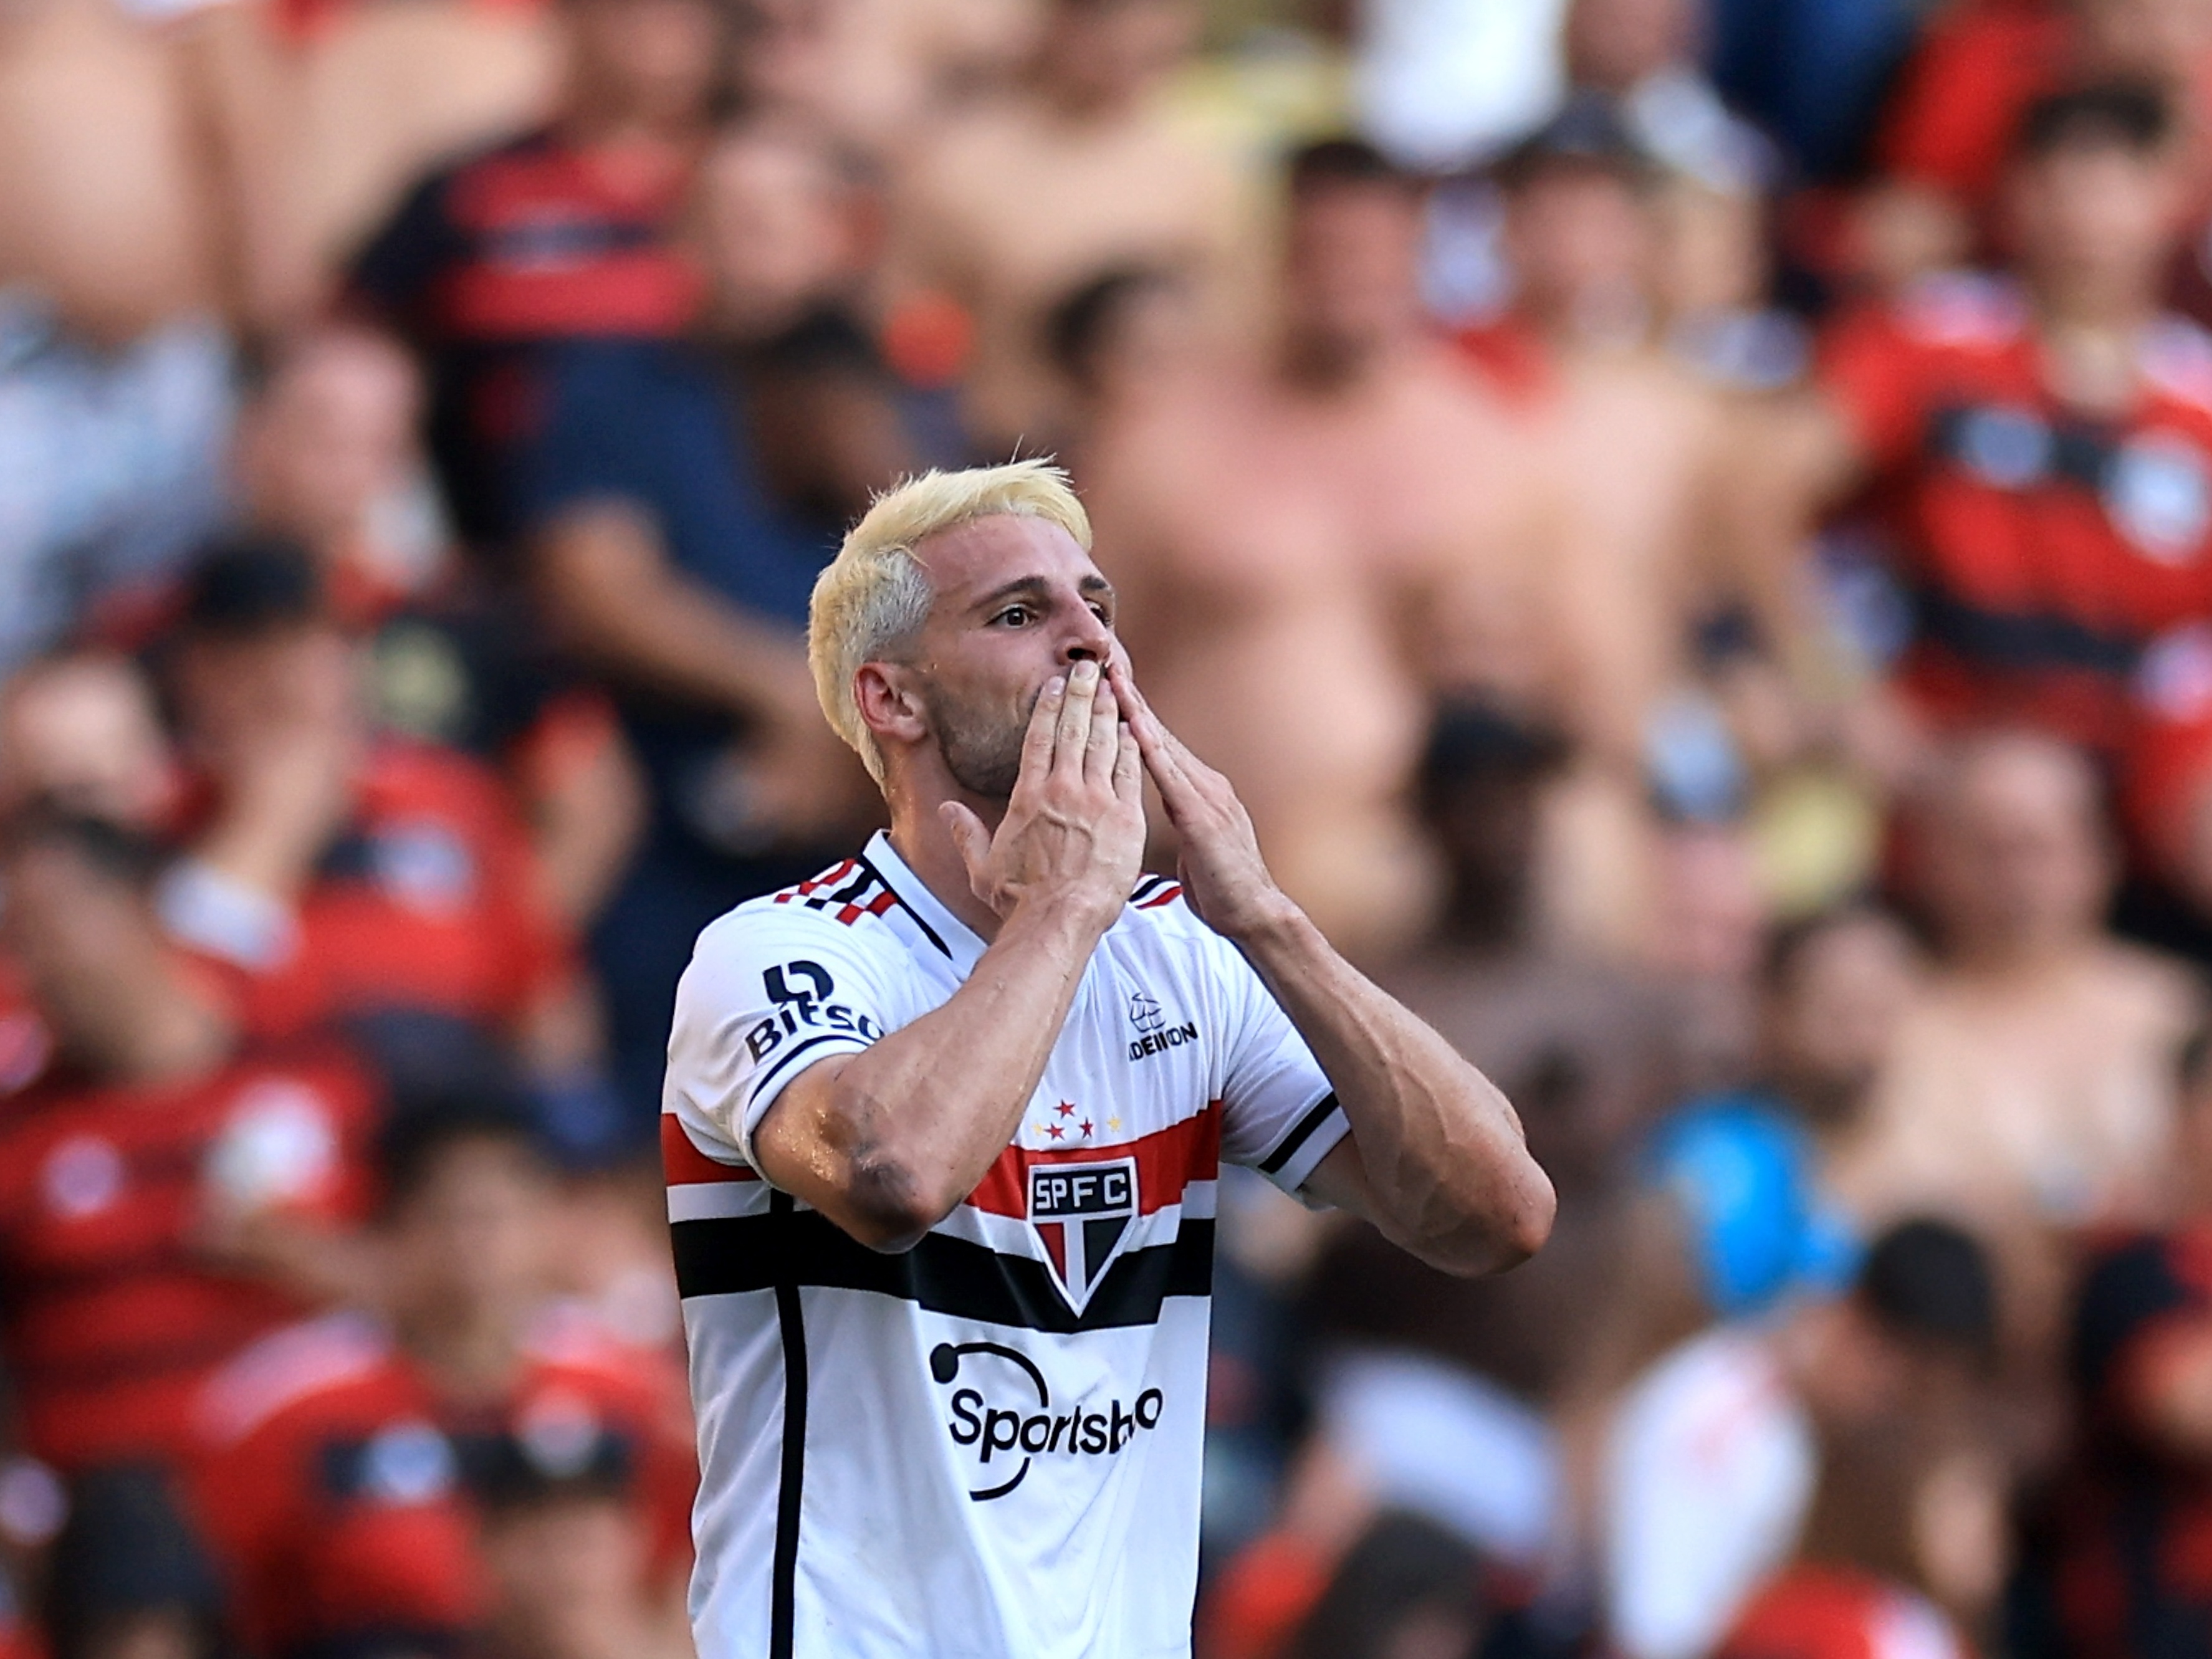 São Paulo x Flamengo: ainda há ingressos para a final da Copa do